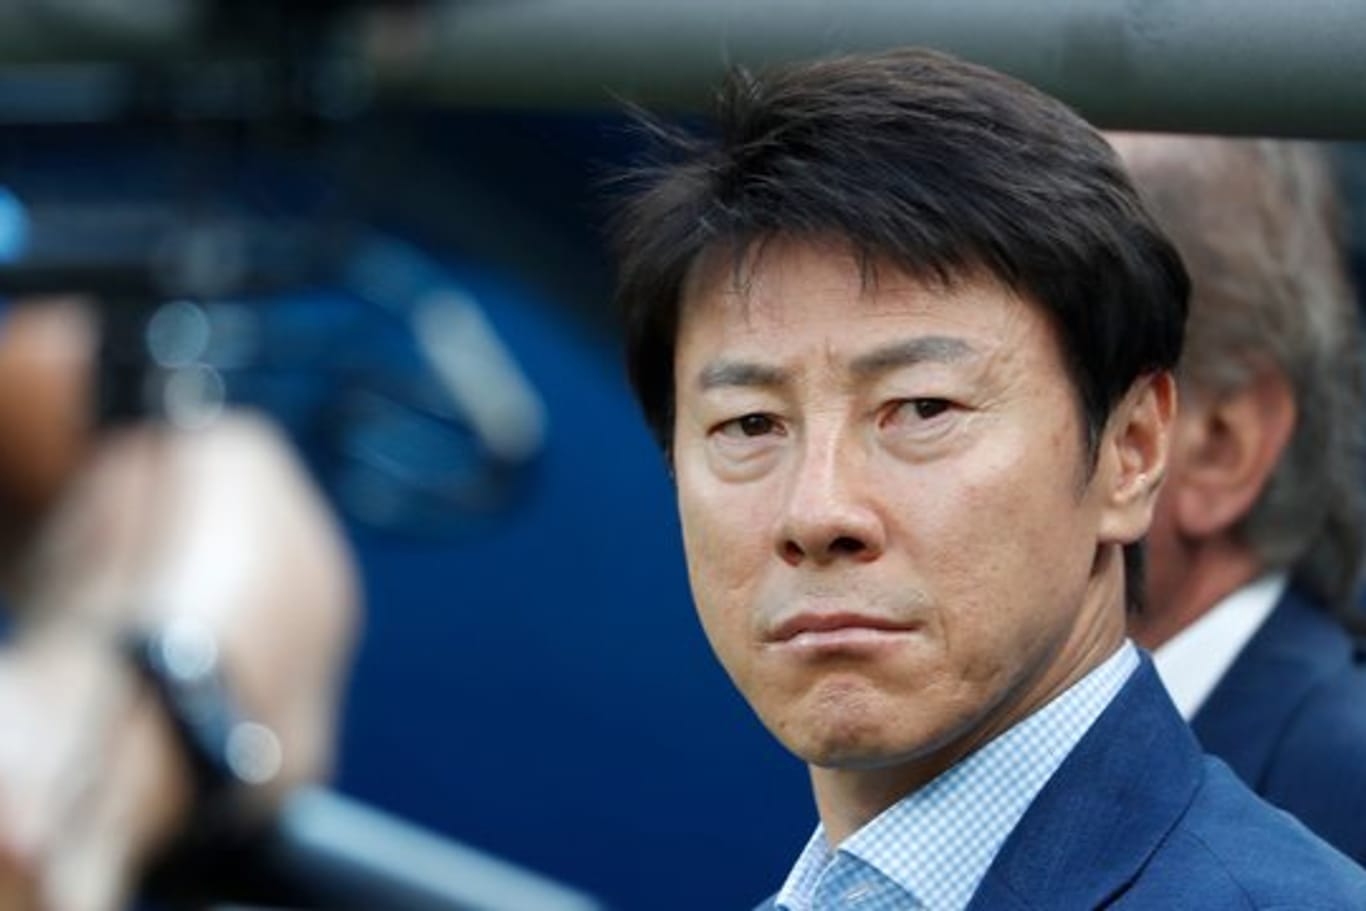 Südkoreas Trainer Tae-Yong Shin fühlt sich von den Vergleichen mit Bundestrainer Löw geehrt.